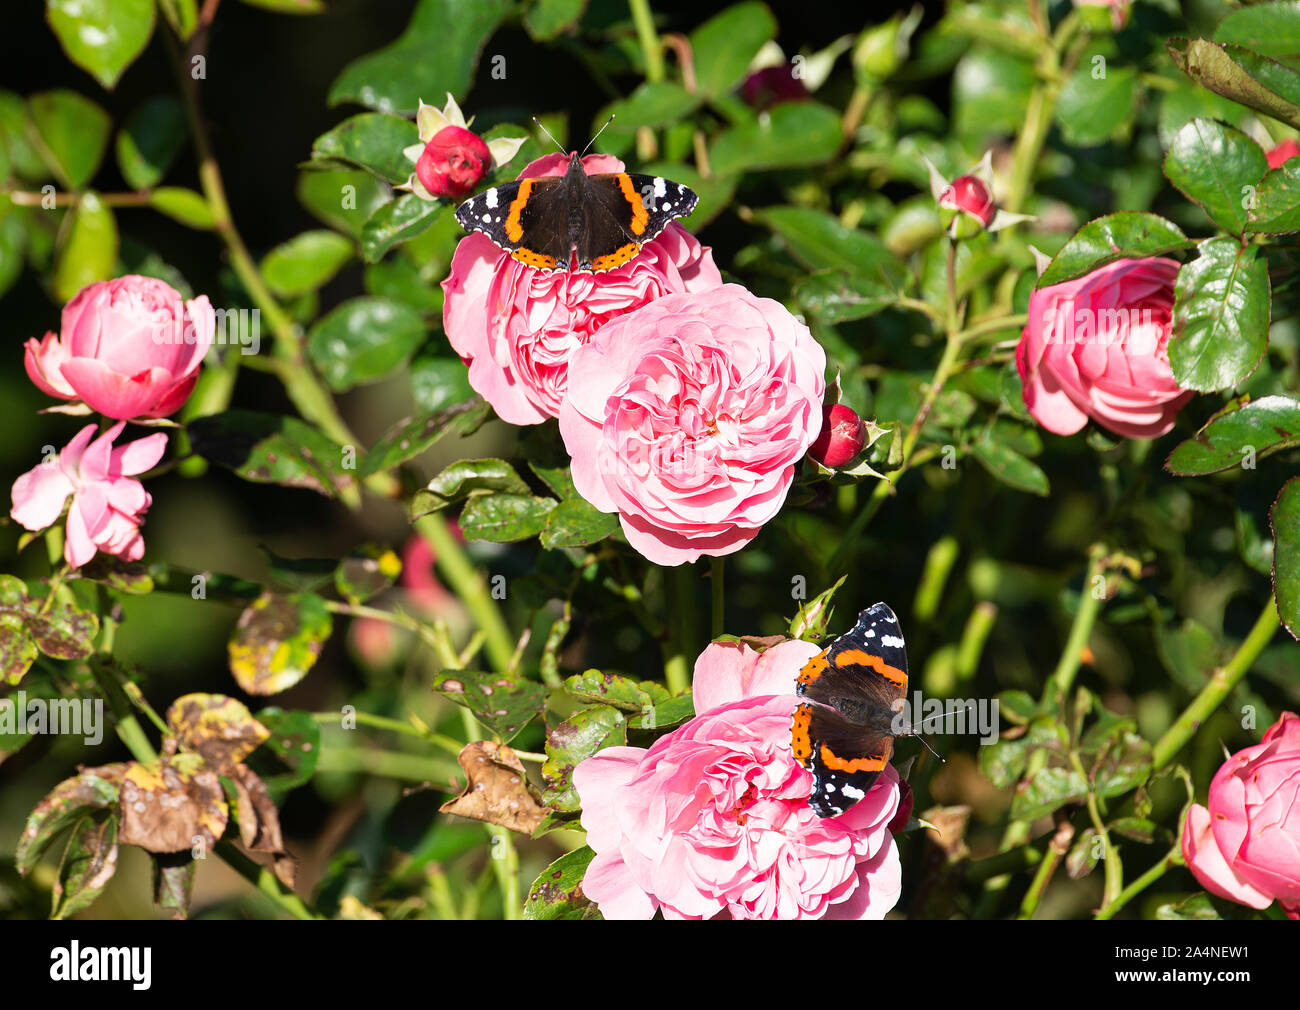 Beau Red Admiral Butterflies À La Recherche de Nectar sur une rose rose sur laquelle se nourrir dans un jardin à Sawdon près de Scarborough North Yorkshire Angleterre Royaume-Uni Banque D'Images